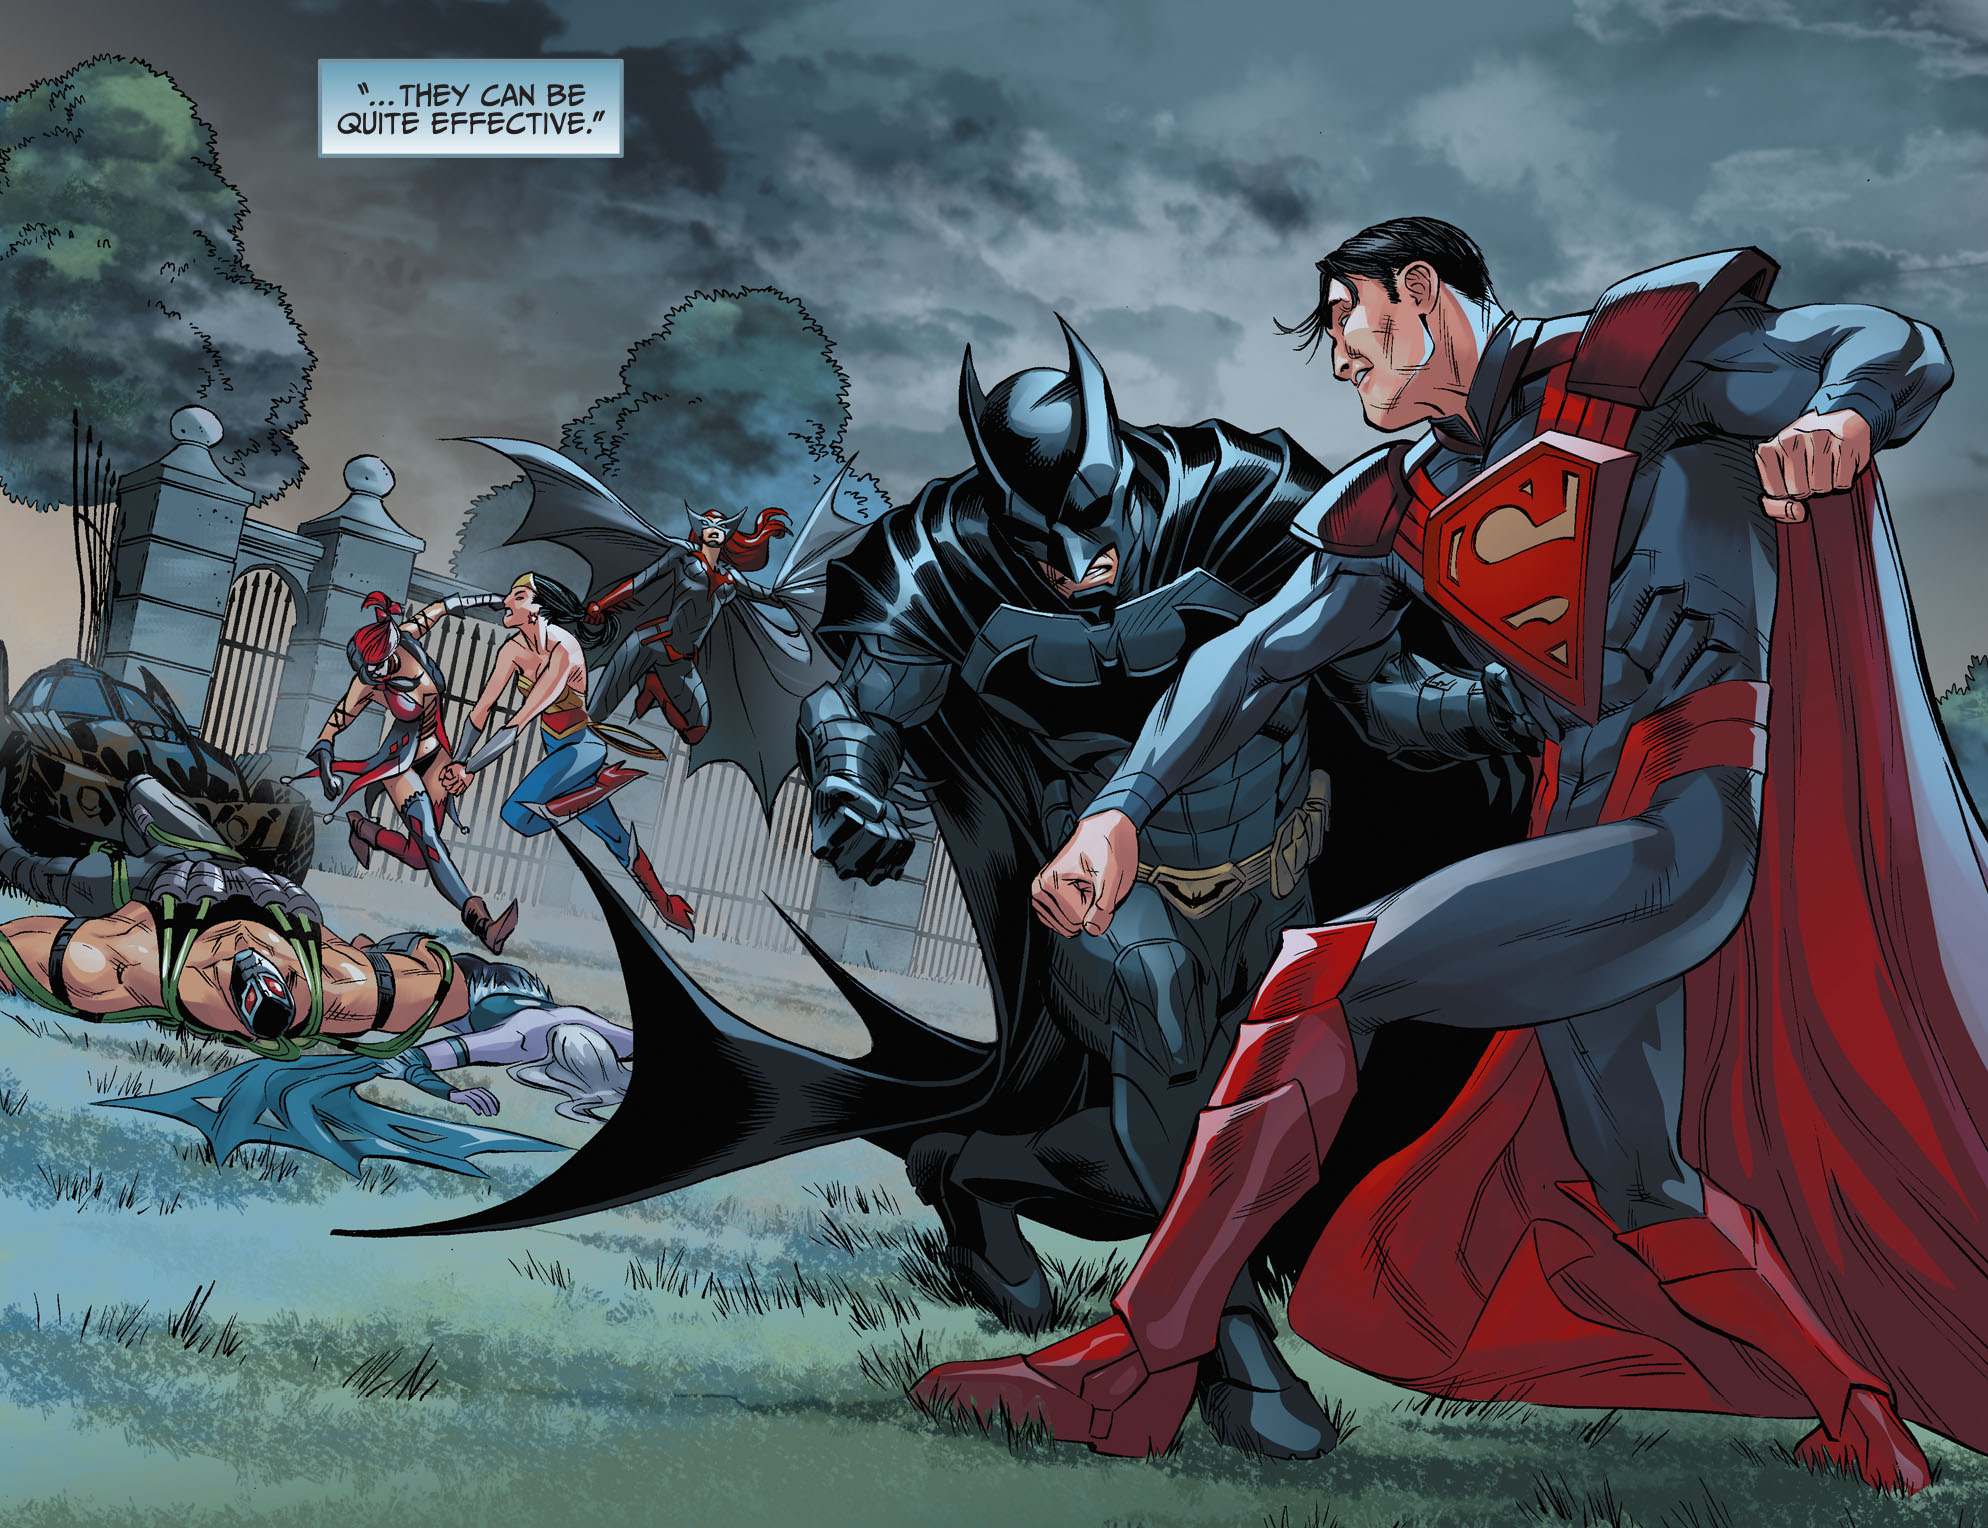 Супермен против супермена 2. Injustice Gods among us Бэтмен. Супермен против Супермена Инджастис. Инджастис 1 Супермен. Injustice Gods among us Бэтмен vs Супермен.